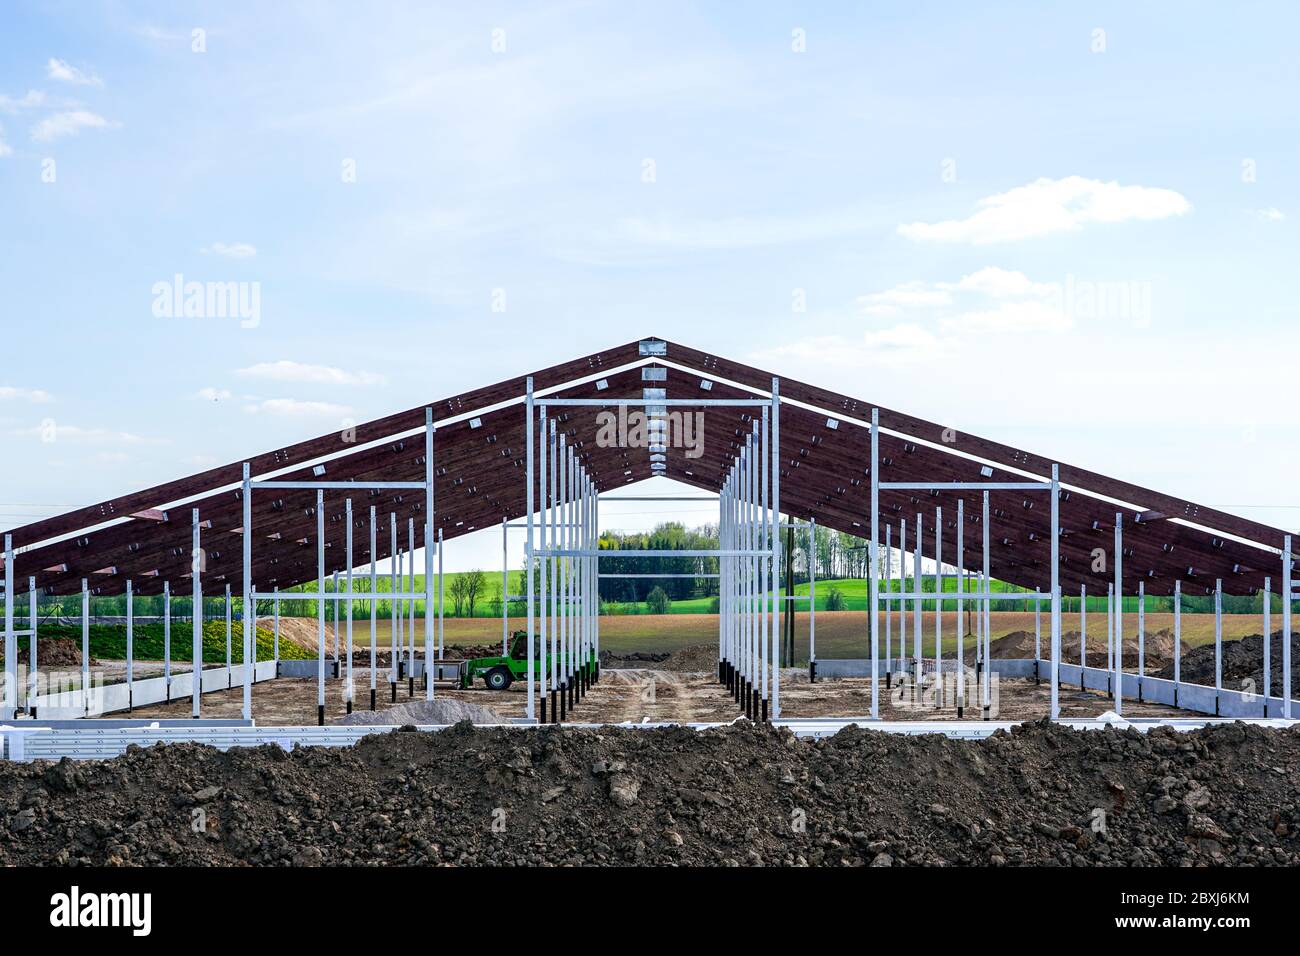 vista de una nueva estructura de metal de un edificio agrícola en construcción Foto de stock